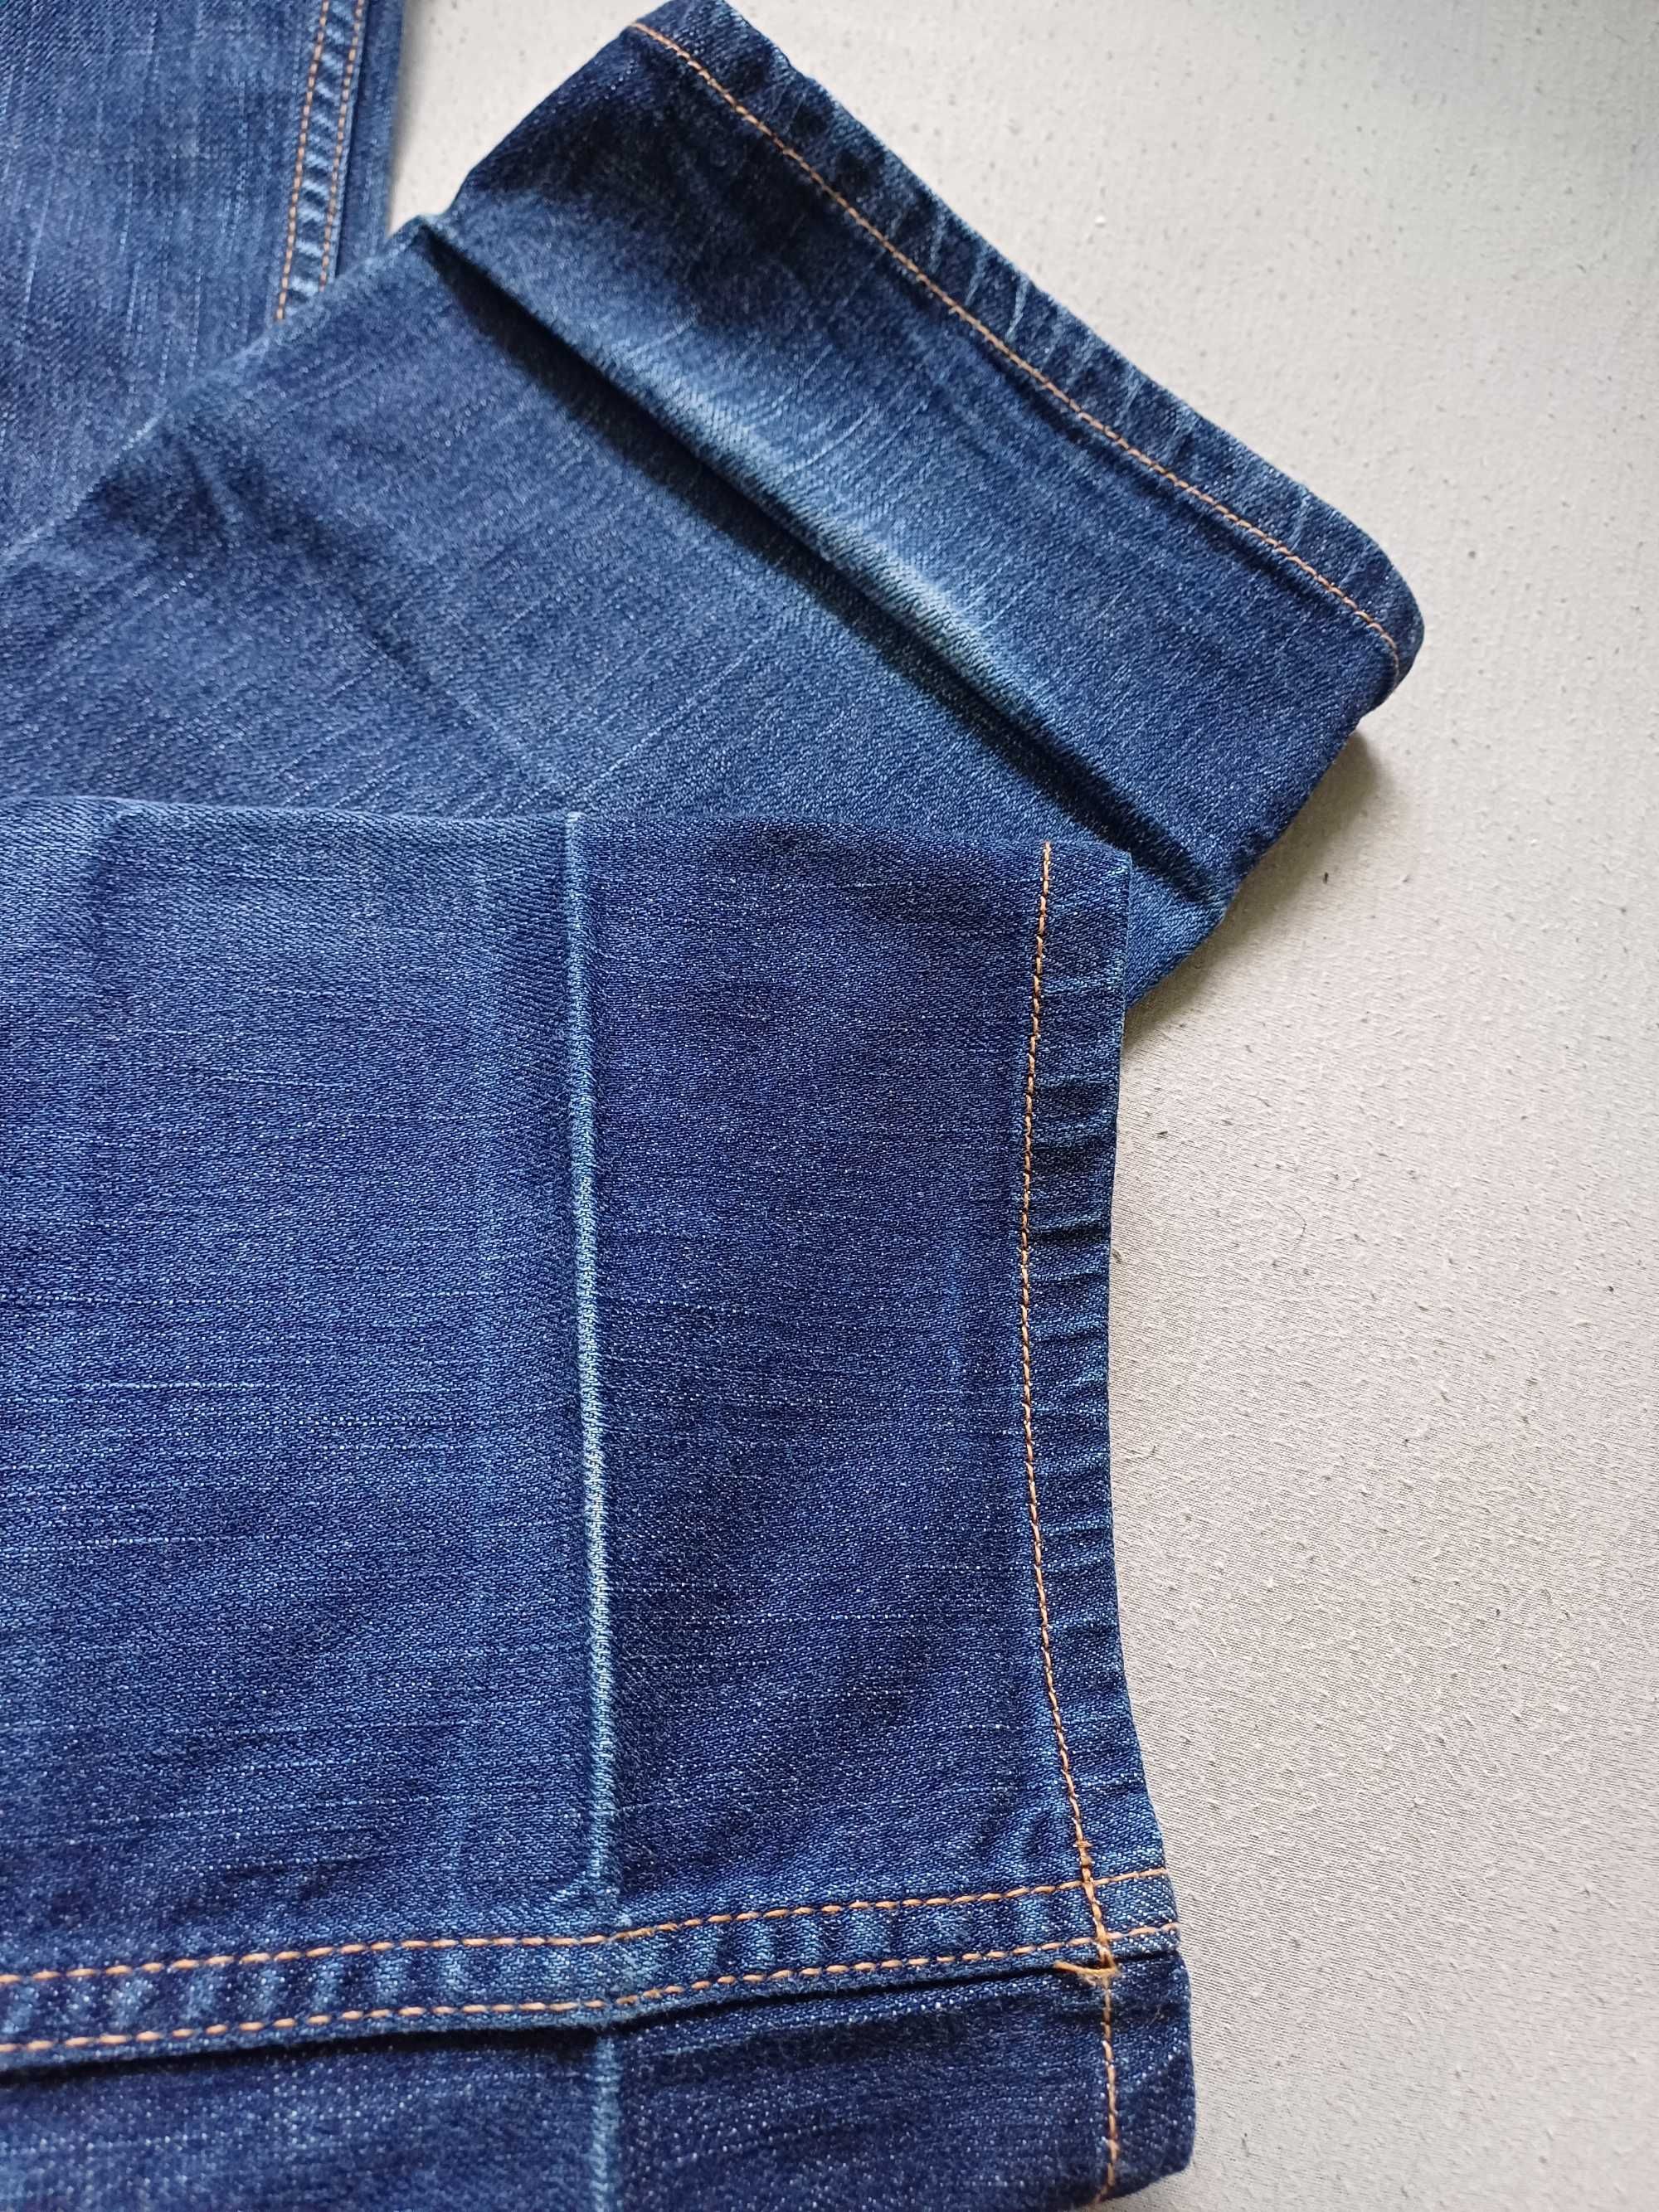 Prada damskie spodnie jeansowe rozmiar 29 M